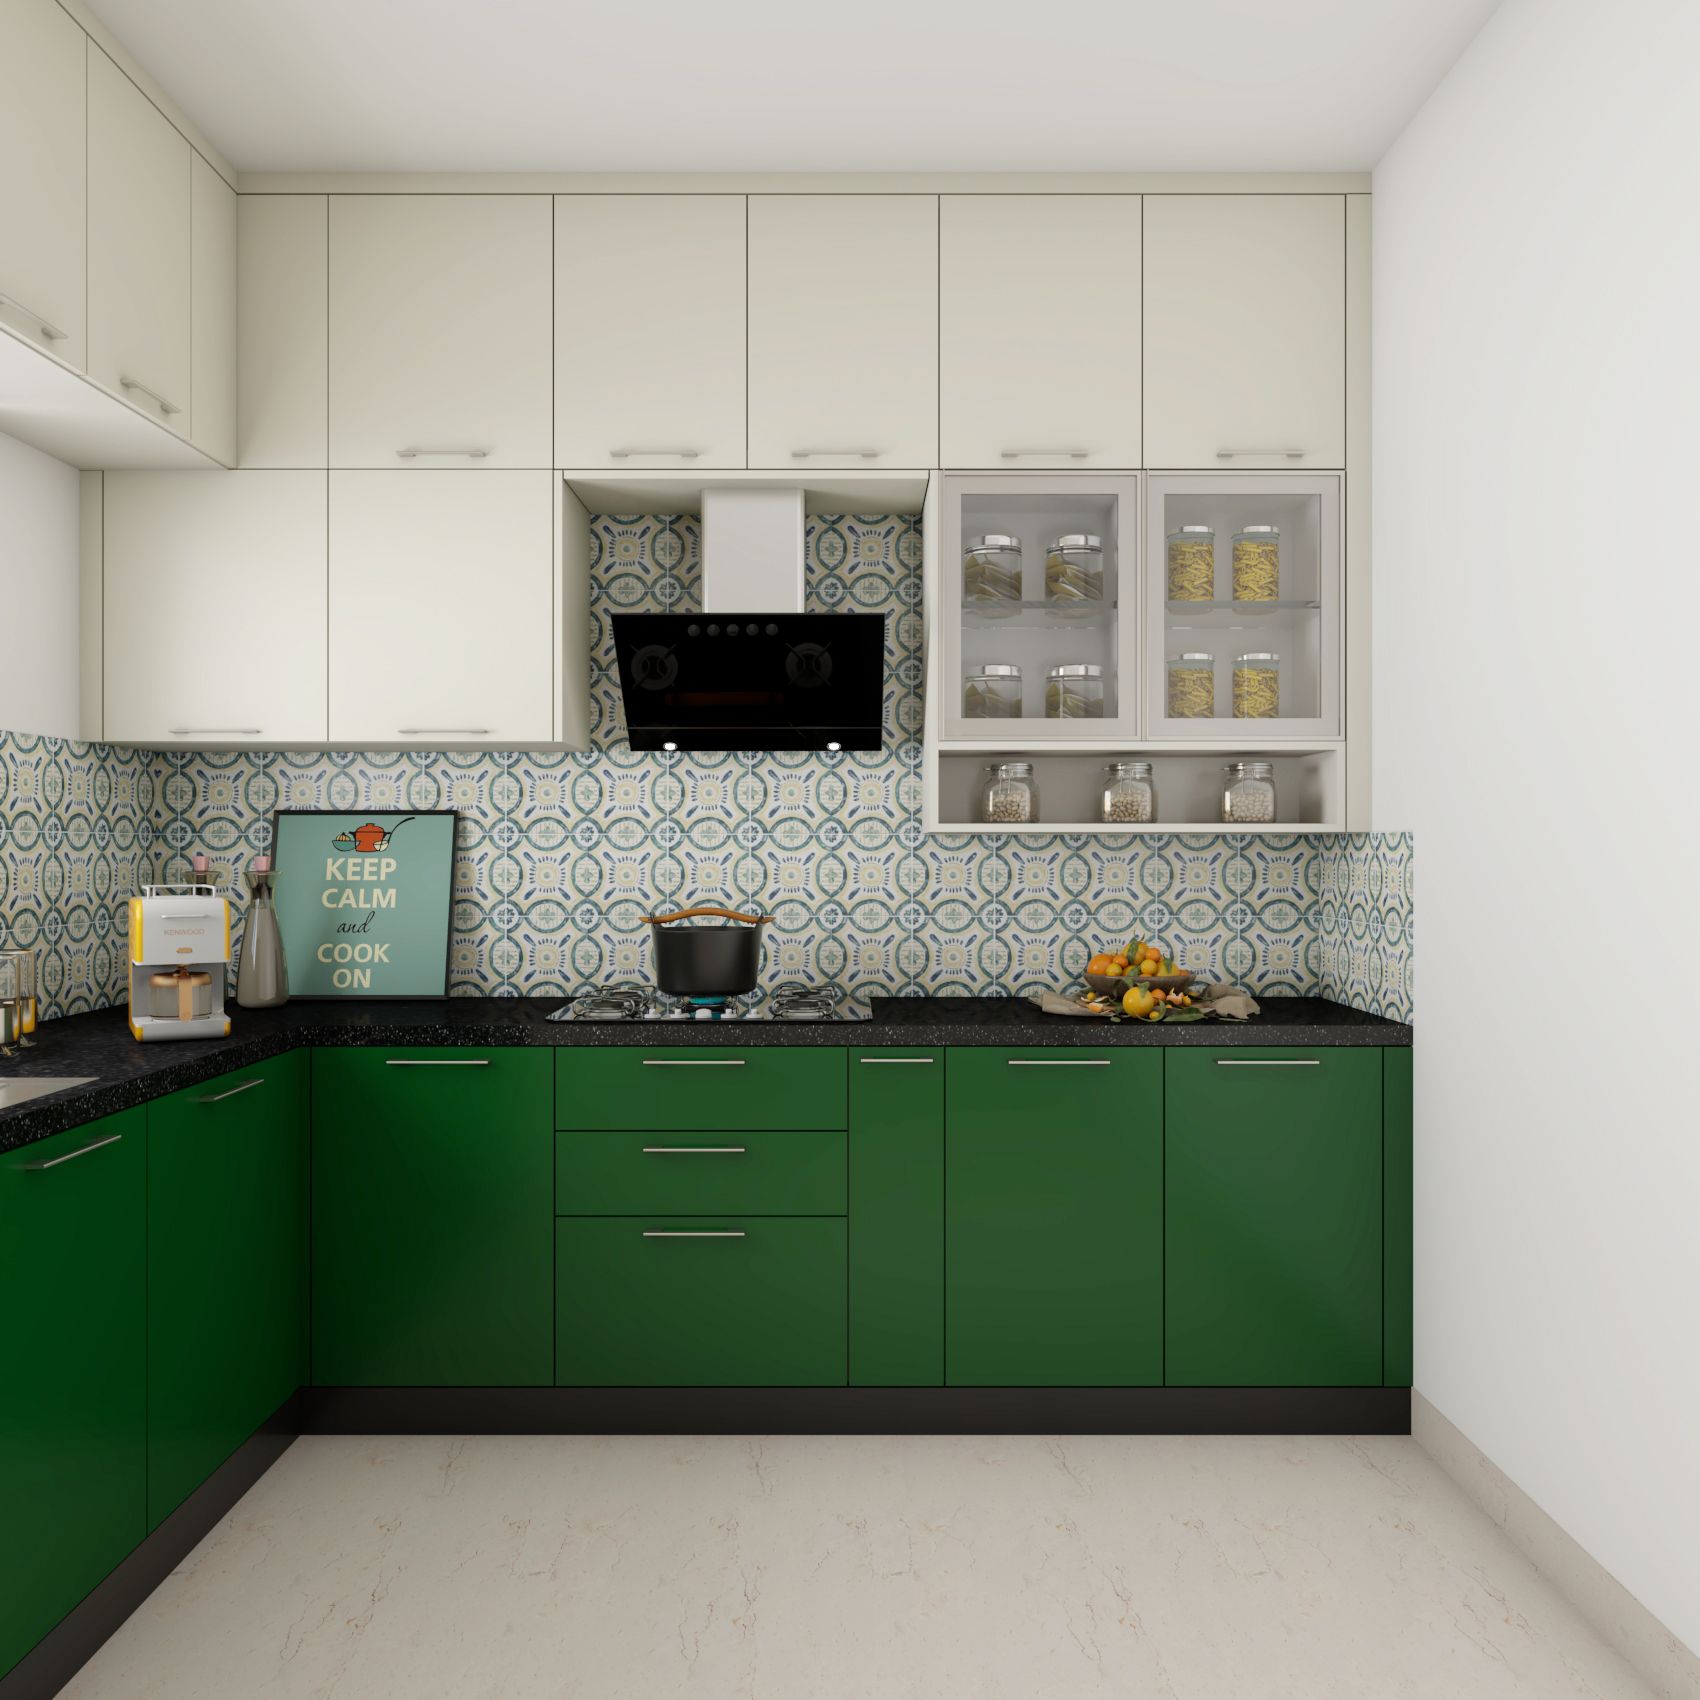 Modular Kitchen Design   Kitchen Interior with Cost   Livspace